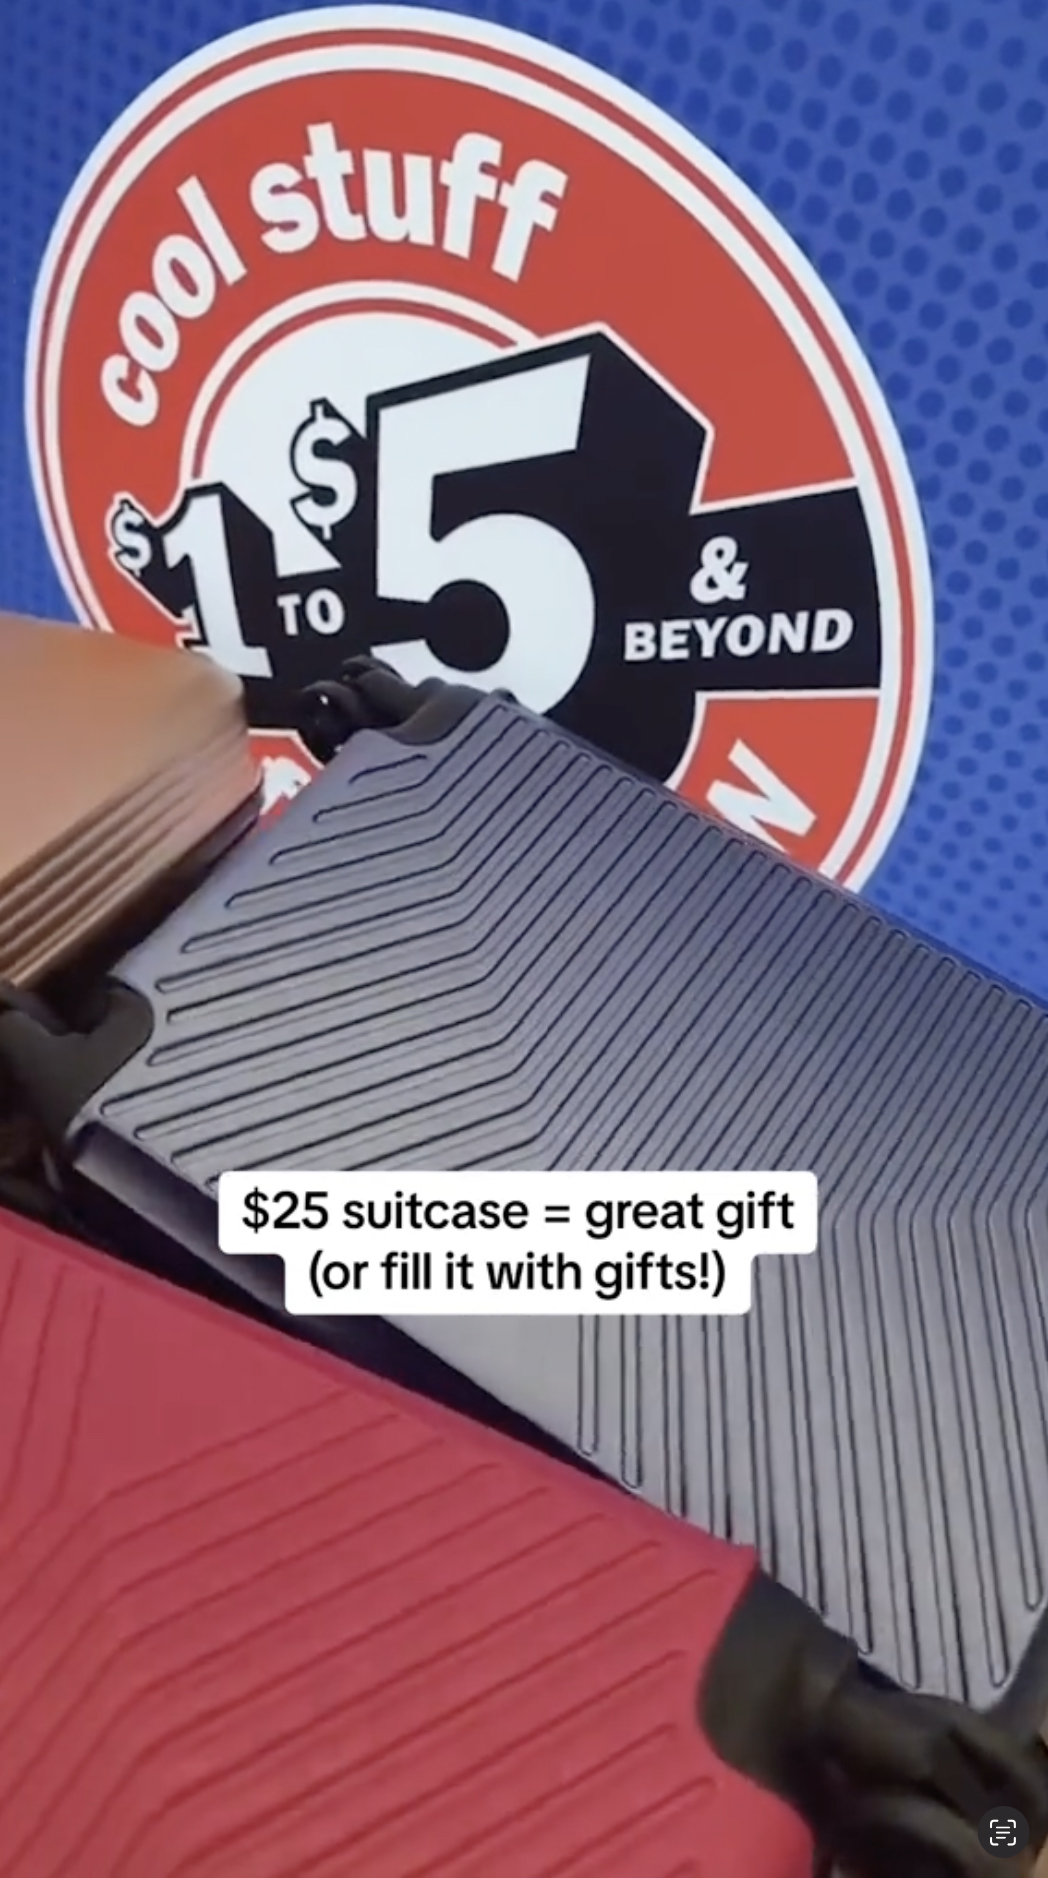 Sie war beeindruckt von diesen 25-Dollar-Koffer, die ihrer Meinung nach eine tolle Möglichkeit zum Transport von Geschenken seien